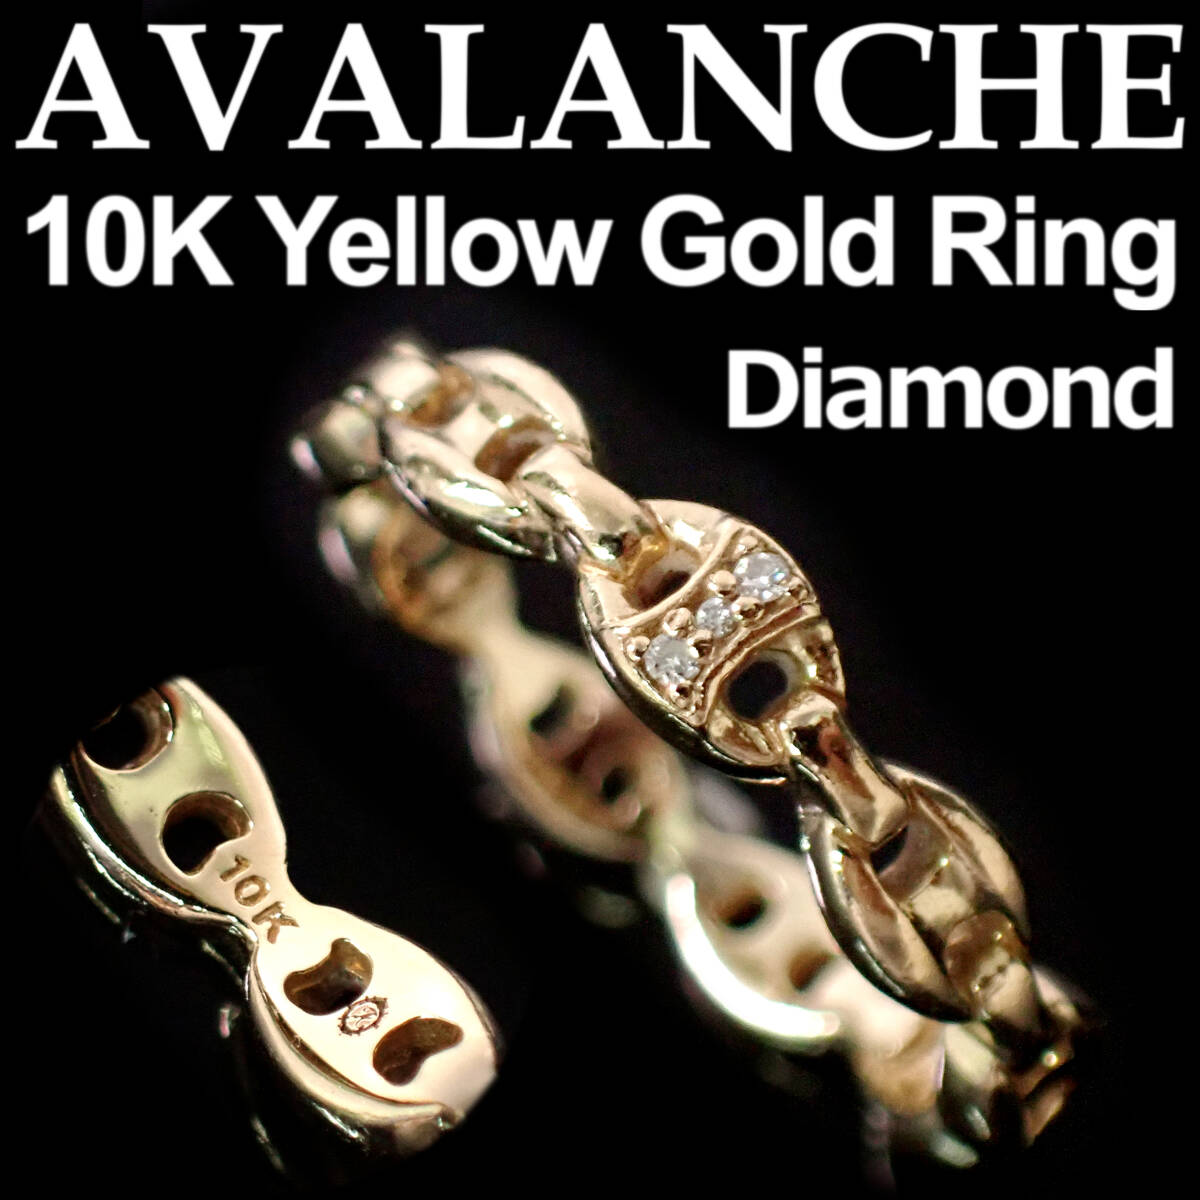 AVALANCHE Diamond 10K Yellow Gold Ring 13号 アヴァランチ ダイヤモンド イエローゴールド リング_画像1